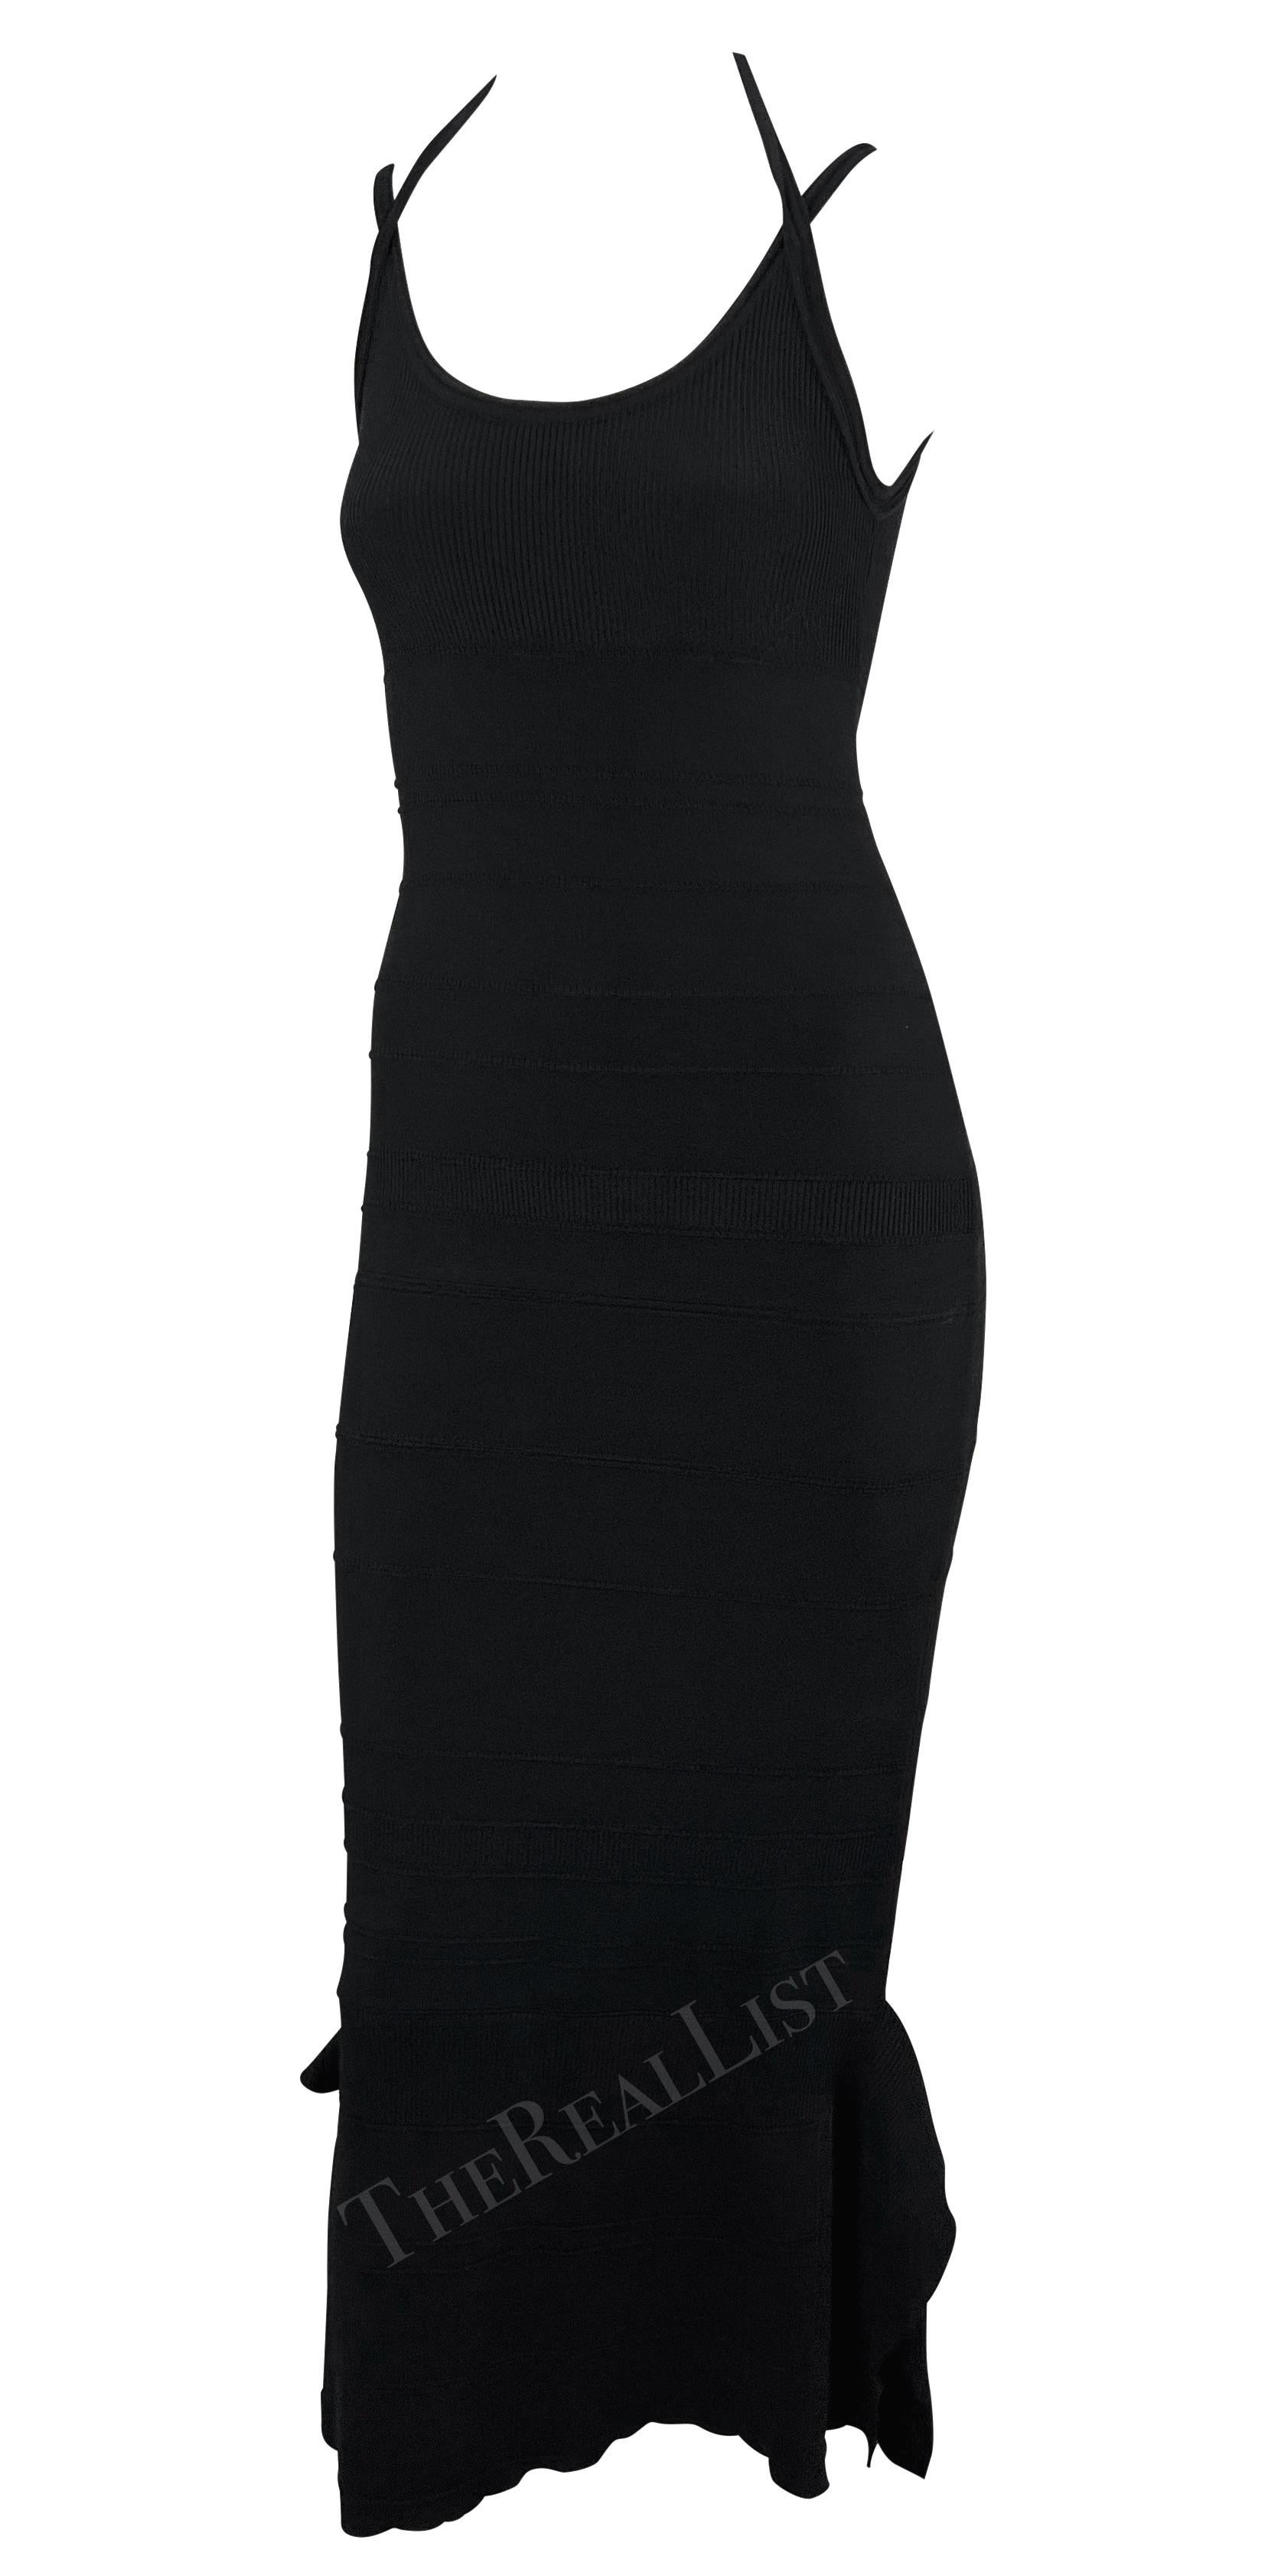 Voici une robe midi en tricot noir de Gianfranco Ferre datant des années 2000. Cette mini robe côtelée ajustée est dotée de fines bretelles, d'un dos nu et d'un ourlet à volants en gradins

Mesures approximatives :
Taille - 40IT
Poitrine :